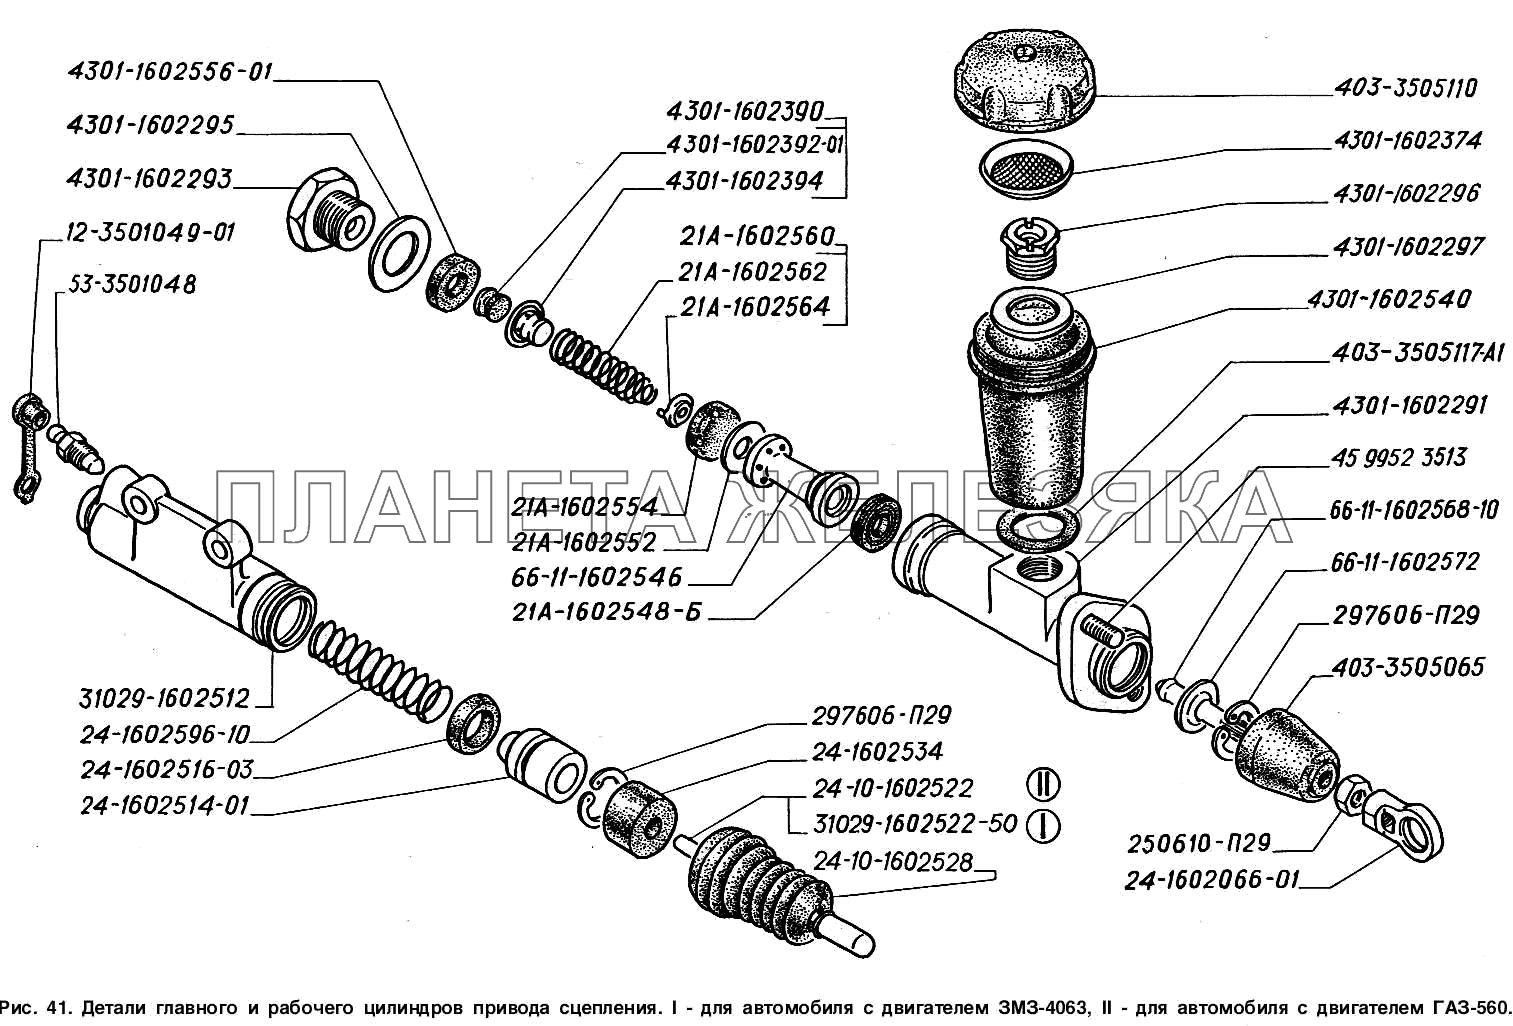 Детали главного и рабочего цилиндров привода выключения сцепления: I - для автомобилей с двигателем ЗМЗ-4063, II - для автомобилей с двигателем ГАЗ-560 ГАЗ-2217 (Соболь)